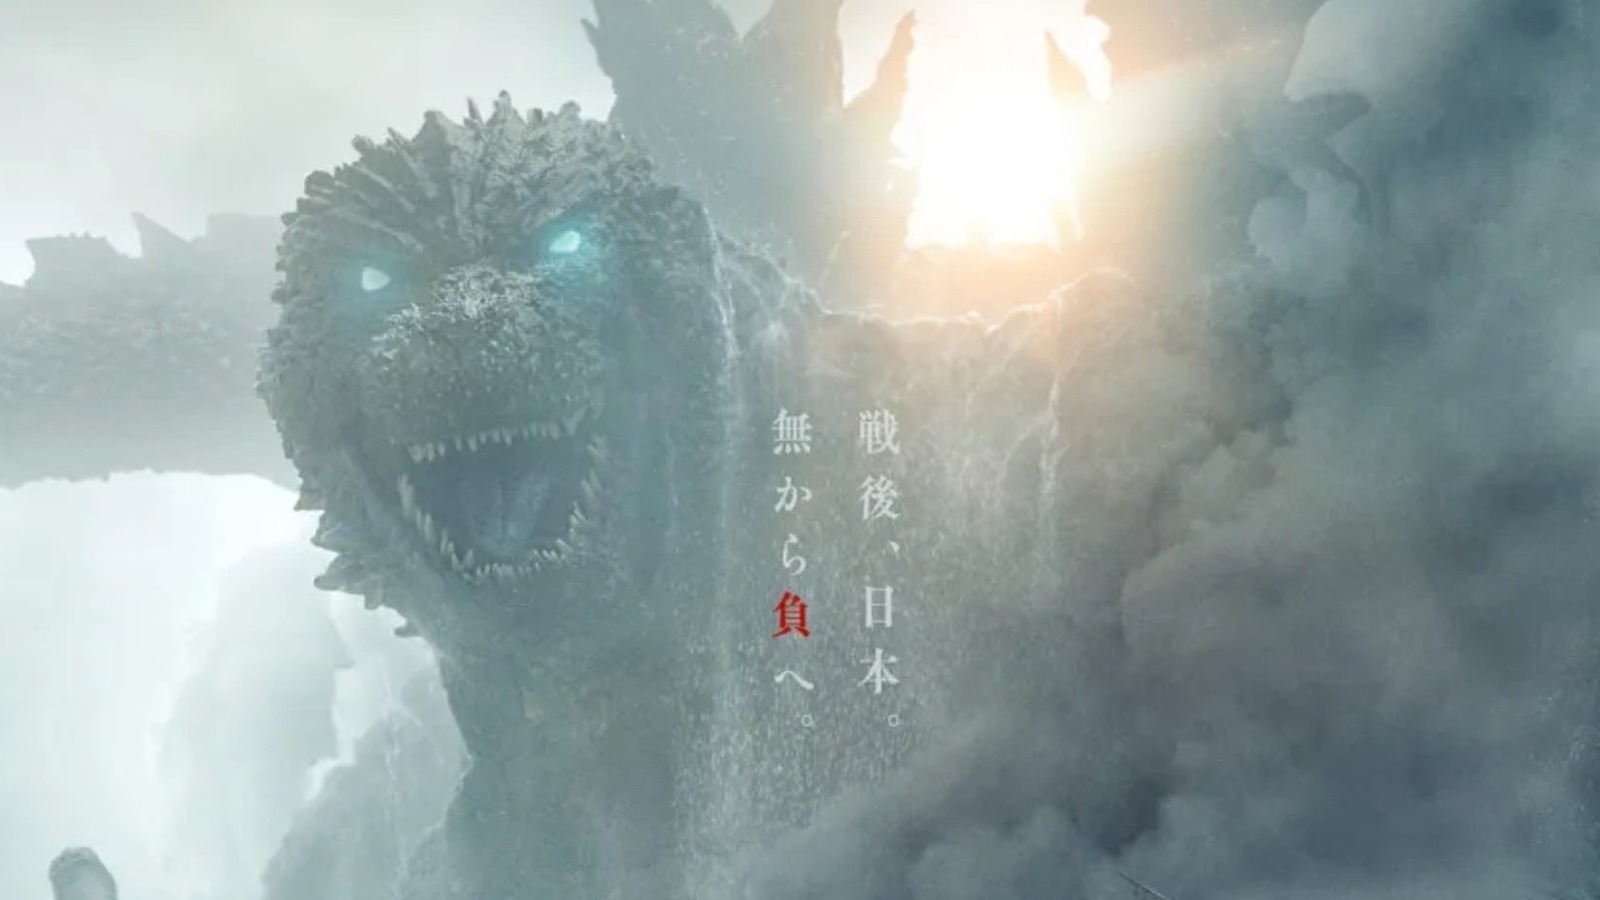 أشياء رائعة: Godzilla Minus One يحصل على ملصق عدسي بطبعة متفجرة